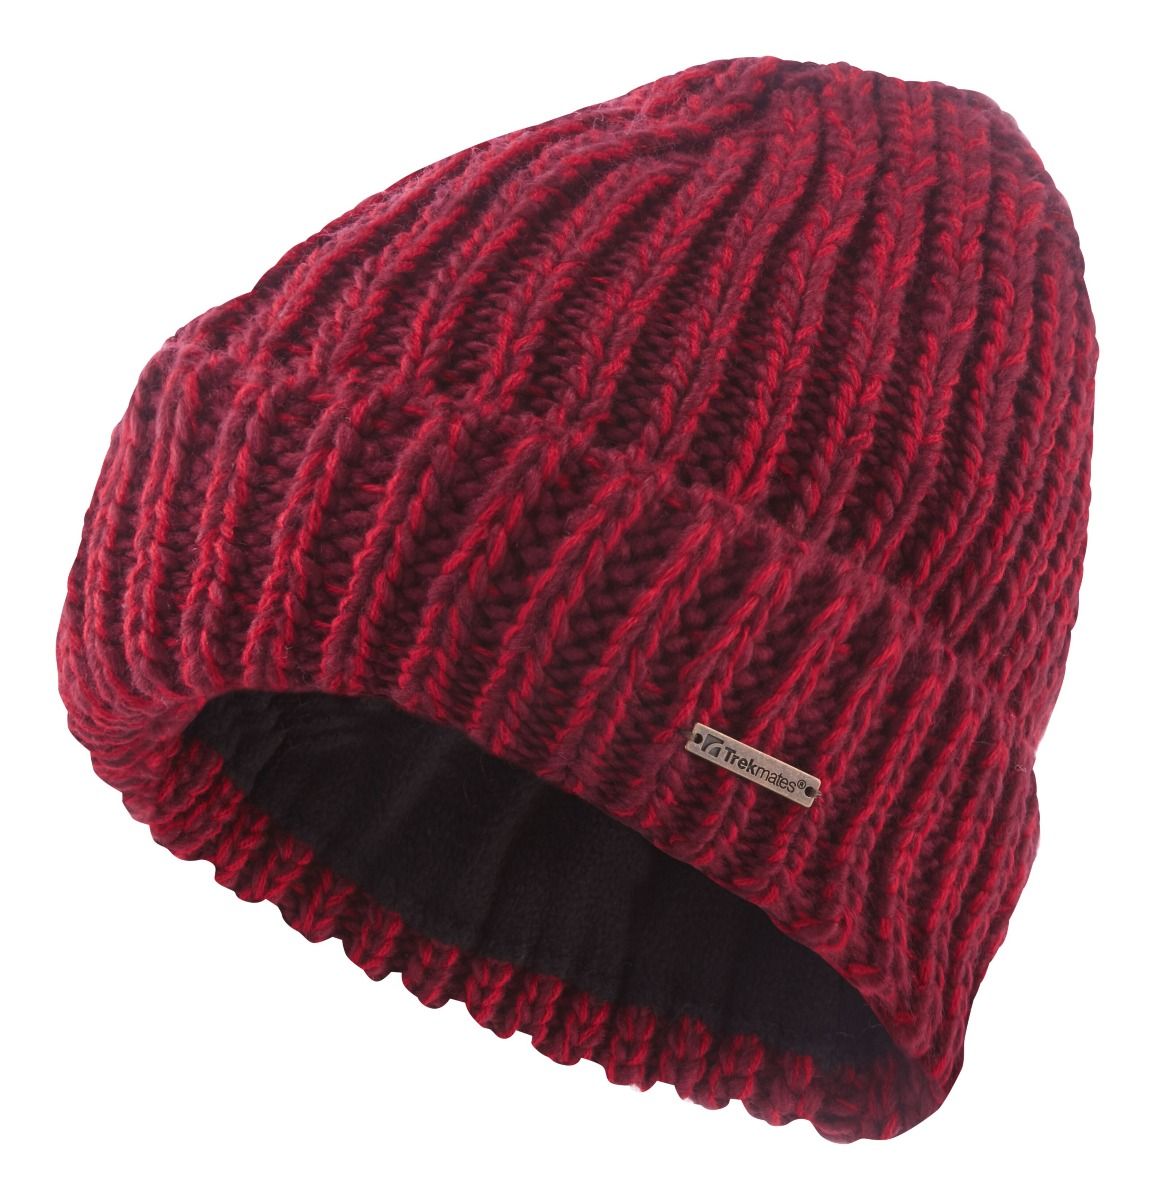 Шапка Trekmates Nazz Knit Hat TM 004338 Merlot, O/S, червона